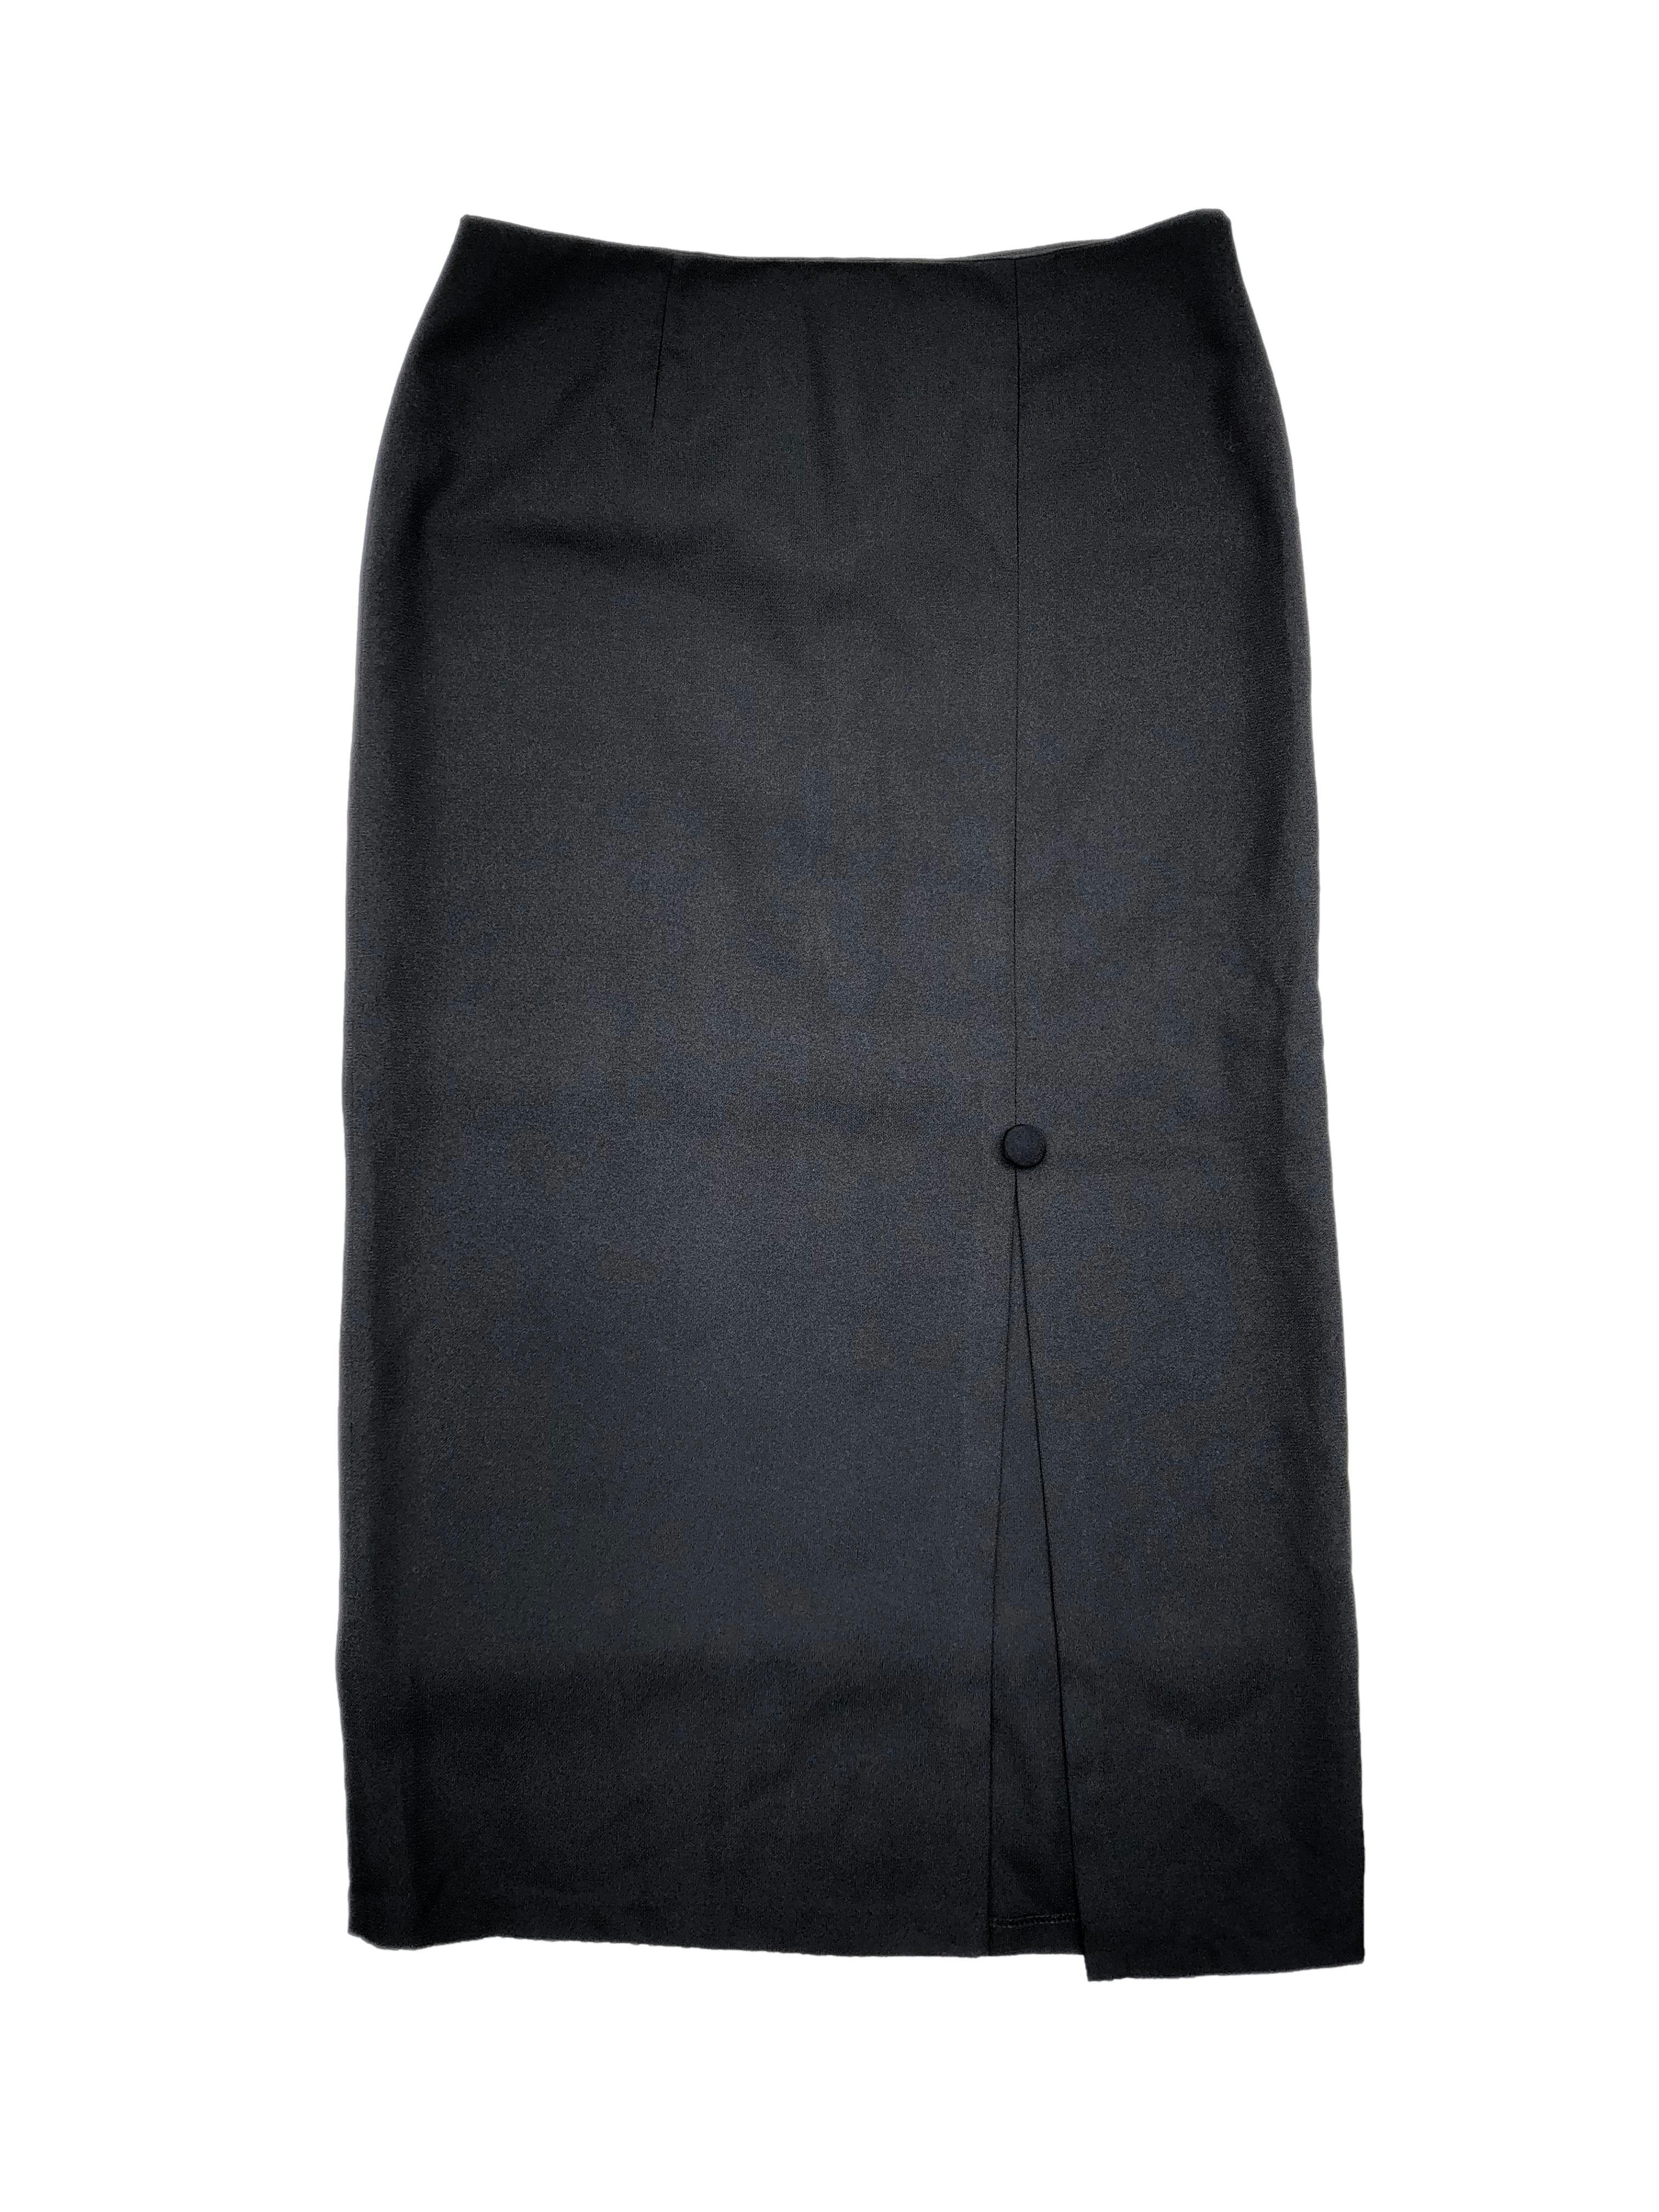 Falda negra de crepé, forrada, con abertura frontal y botón forrado, cierre posterior. Cintura 82cm, Largo 90cm.